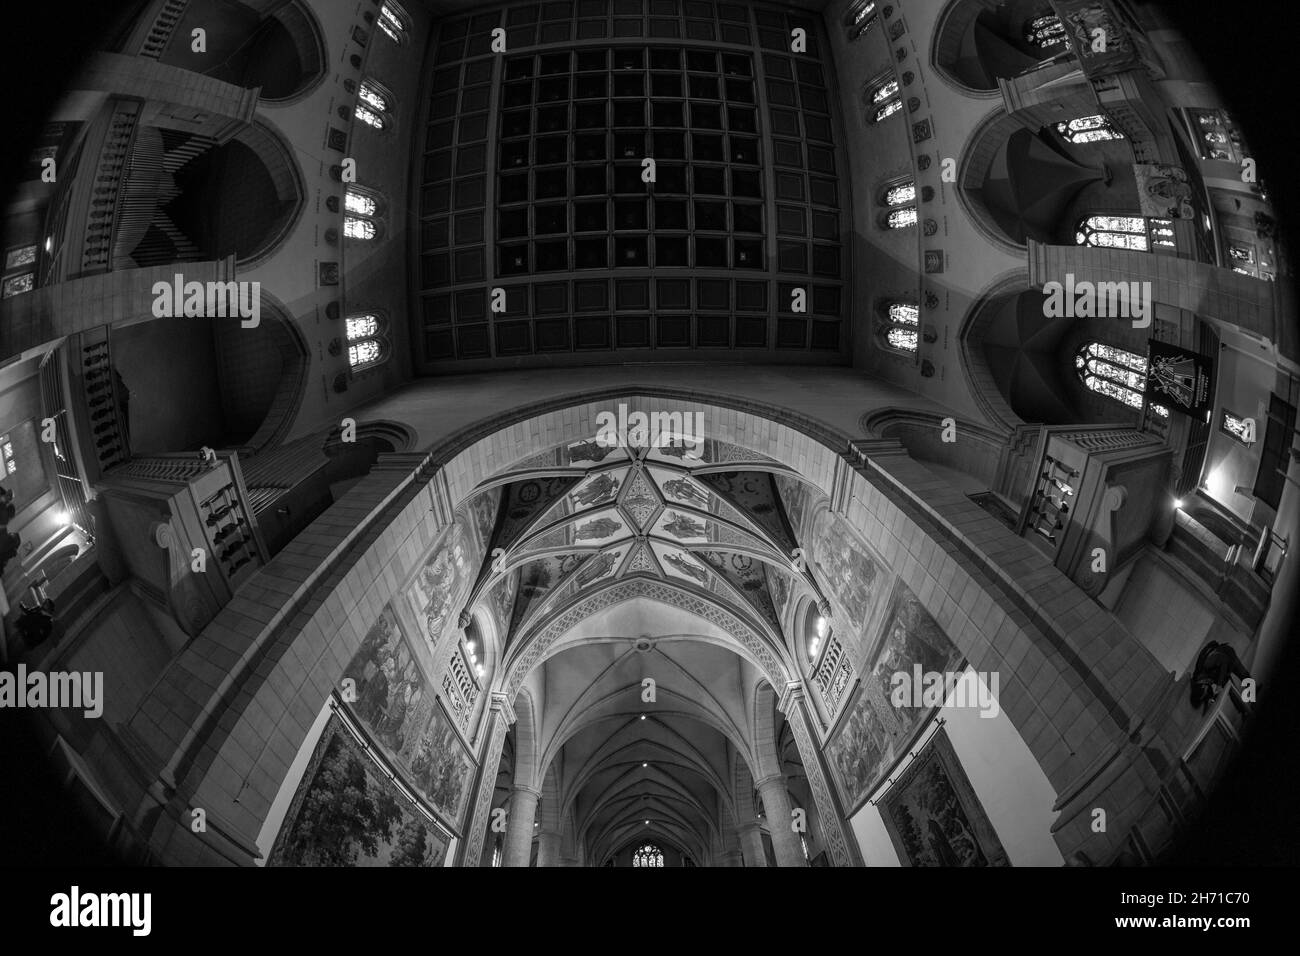 Innenansicht der Kathedrale Notre Dame. Luxemburg-Stadt, Luxemburg. Stockfoto